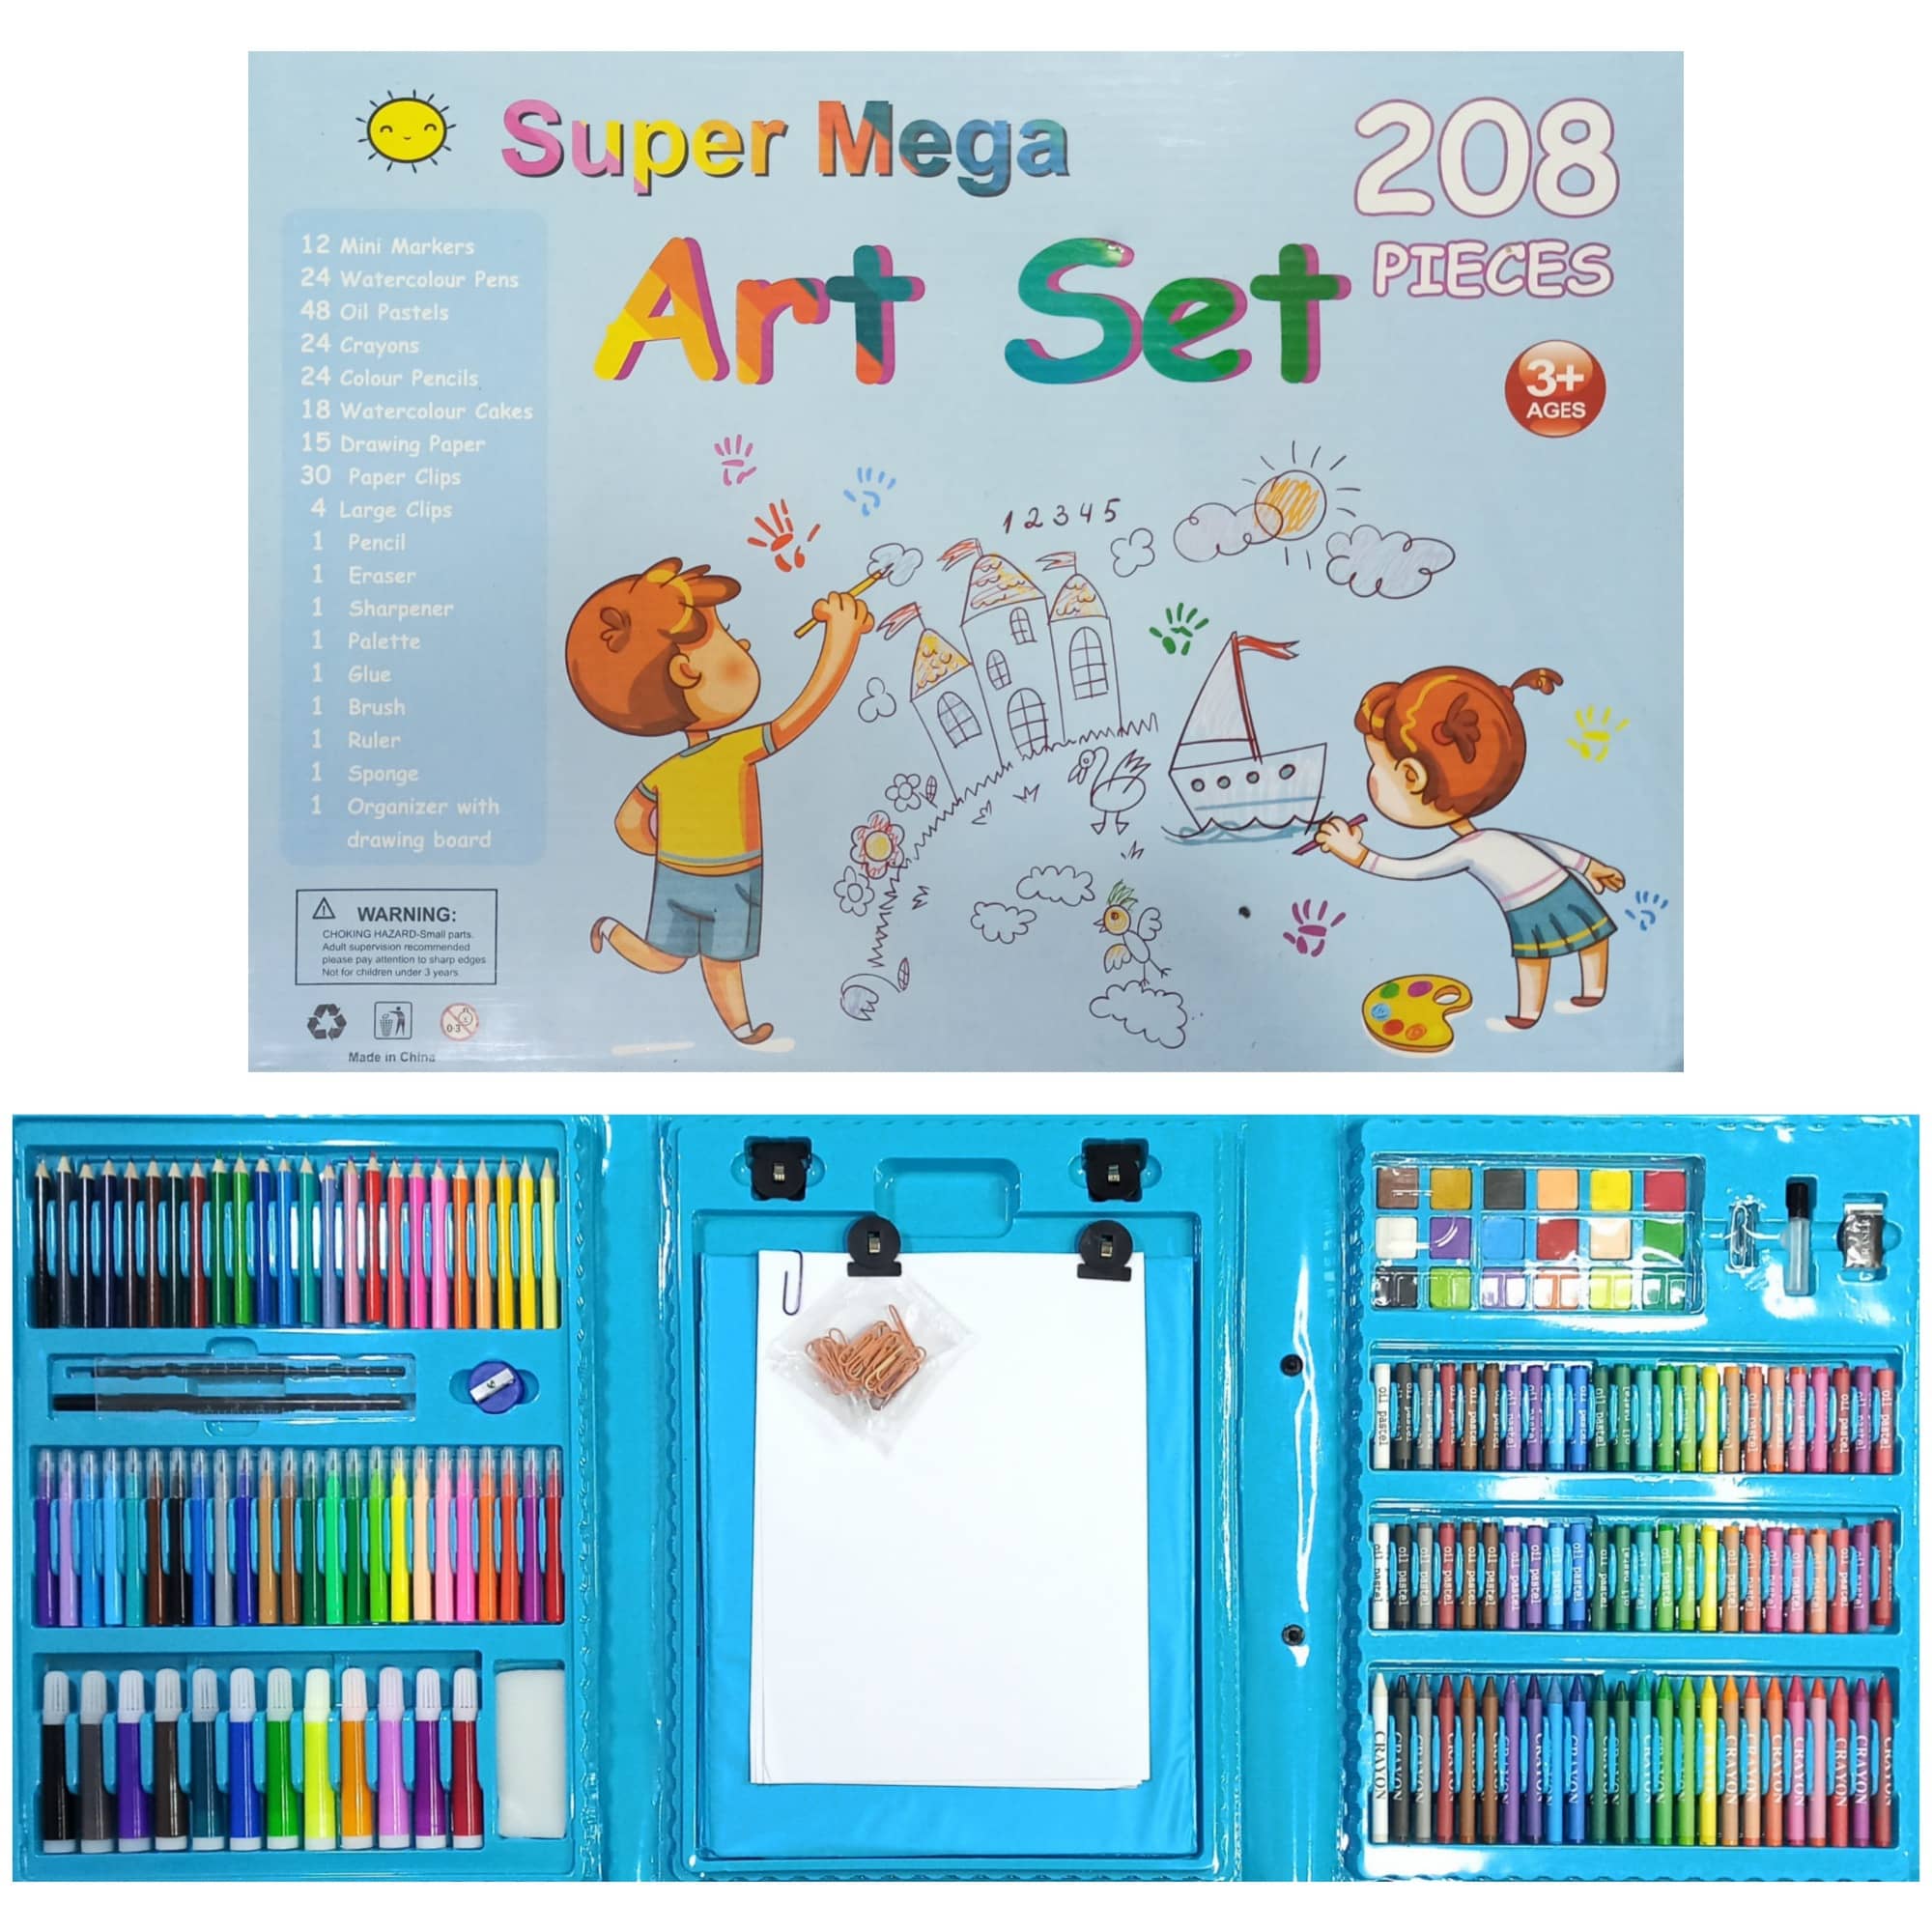  Kit de artes y manualidades para niños pequeños de 2